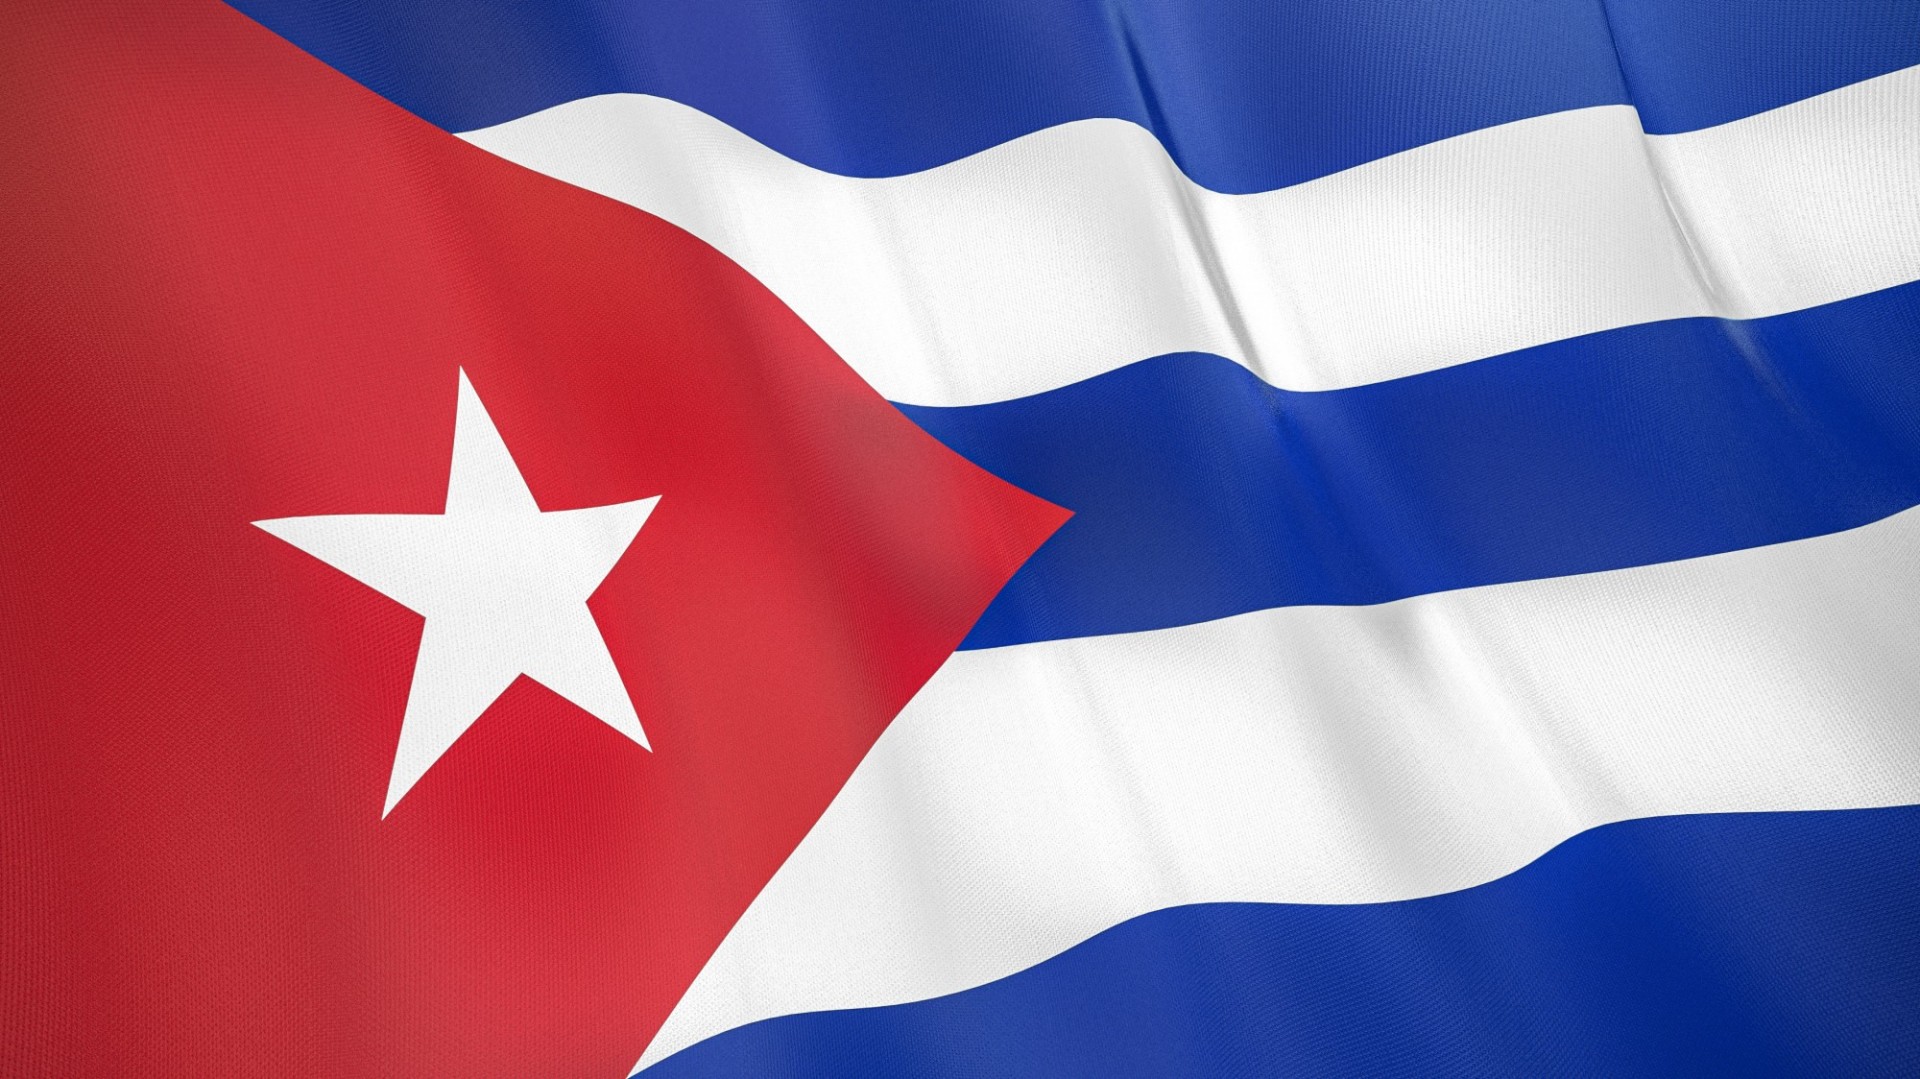 bandera cubana con un triangulo rojo, estrella blanca y franjas en azul y blanco 